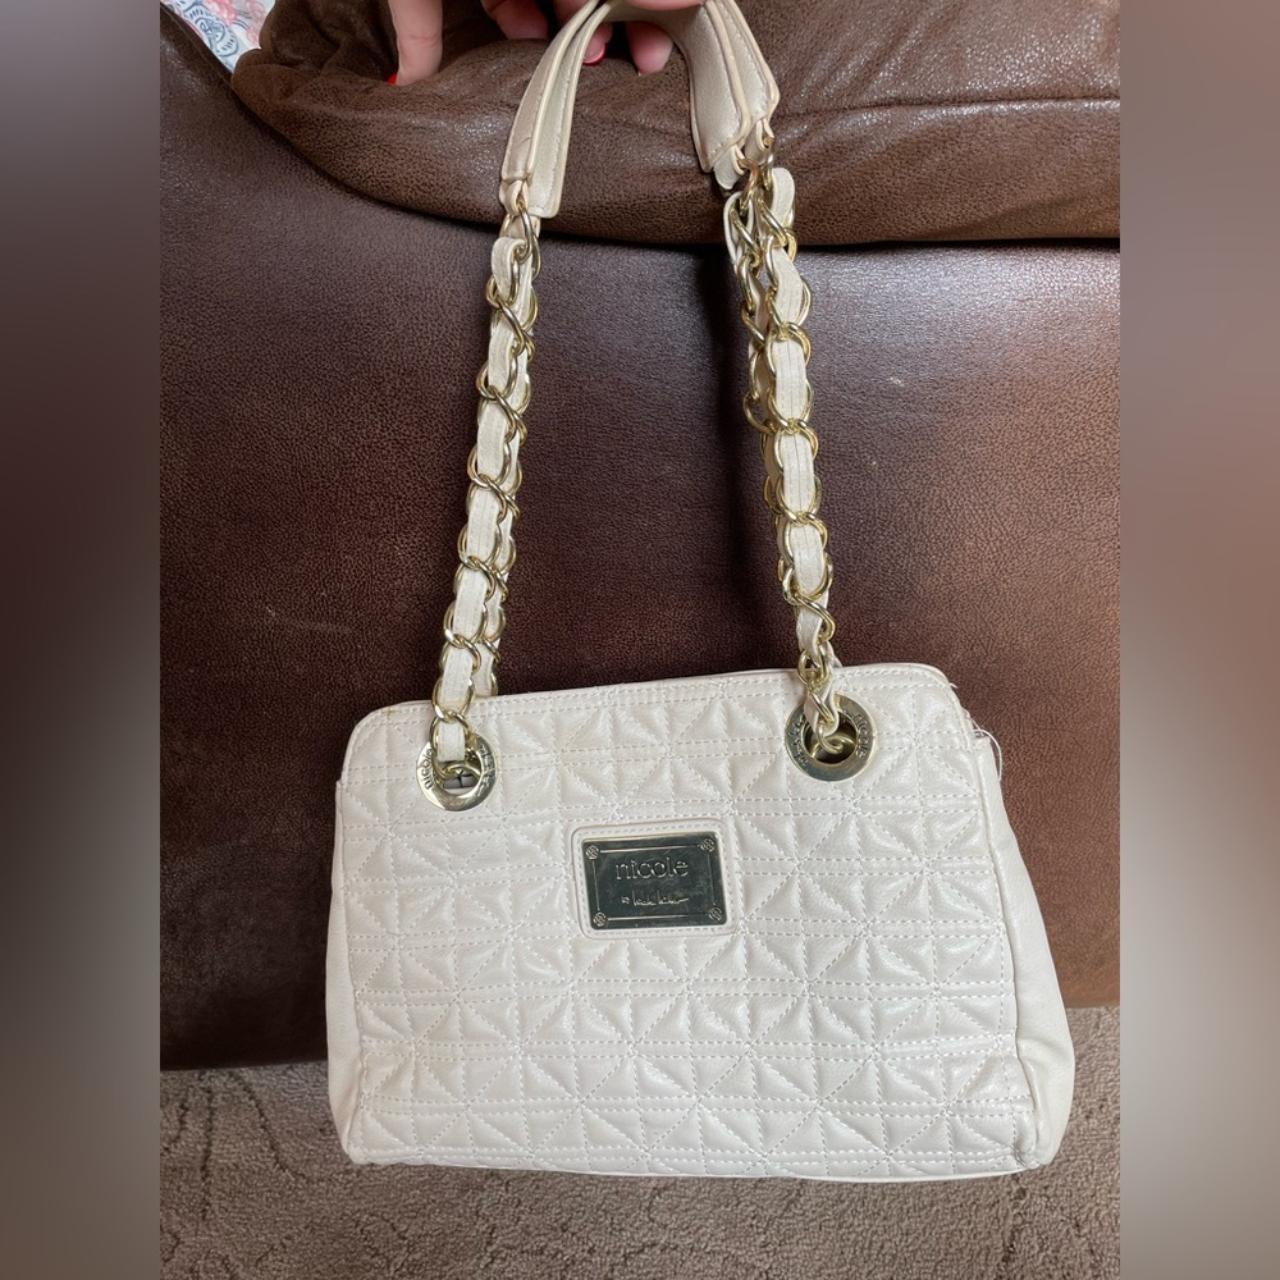 NICOLE MILLER Handbags for Women - Vestiaire Collective